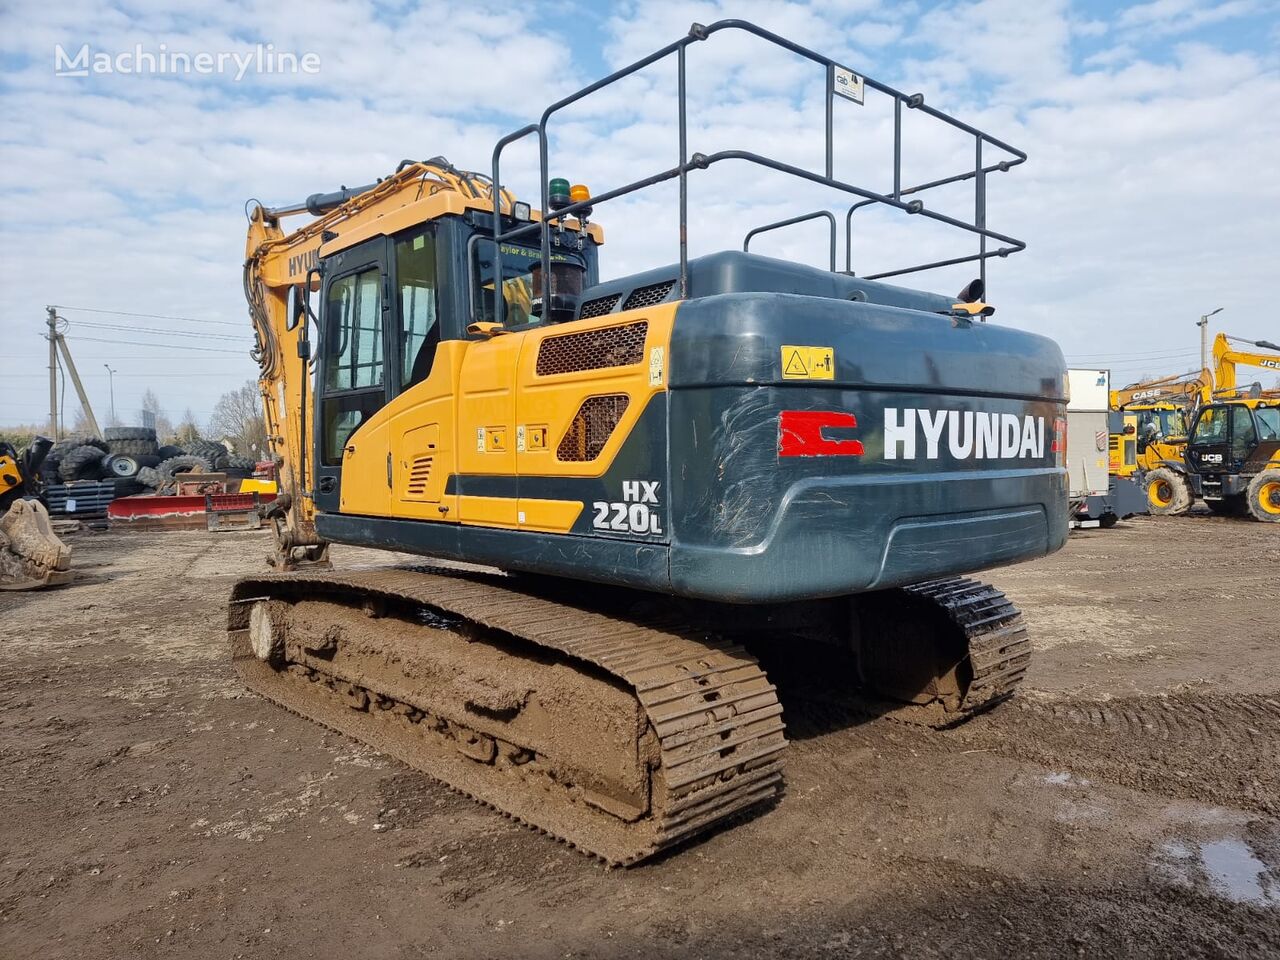 Hyundai HX220L tracked excavator